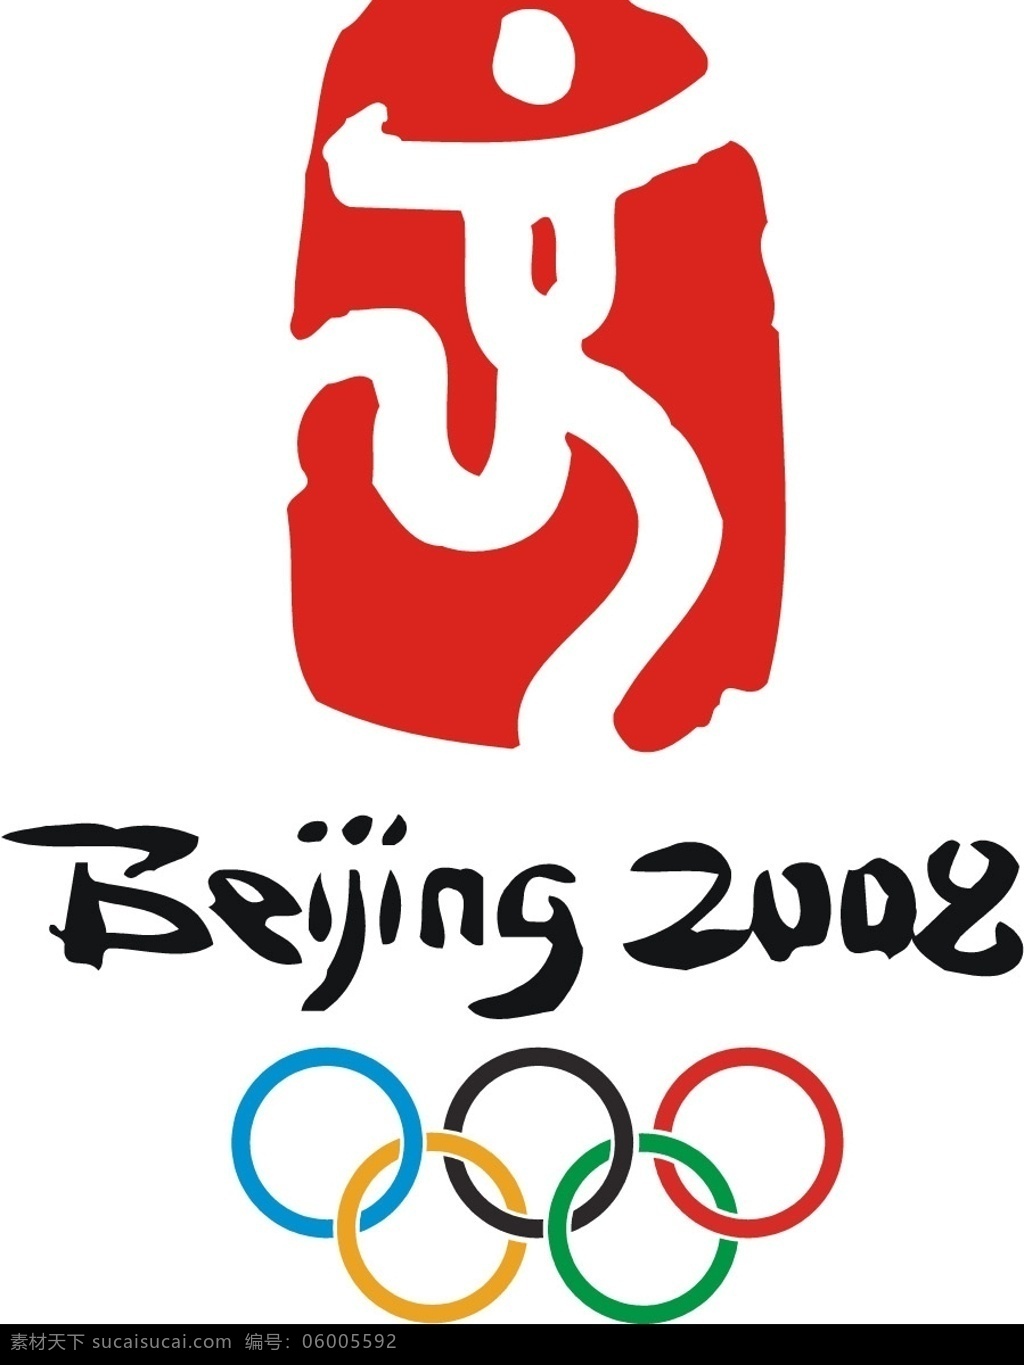 北京奥运标志 奥运标志 标识标志图标 公共标识标志 矢量图库